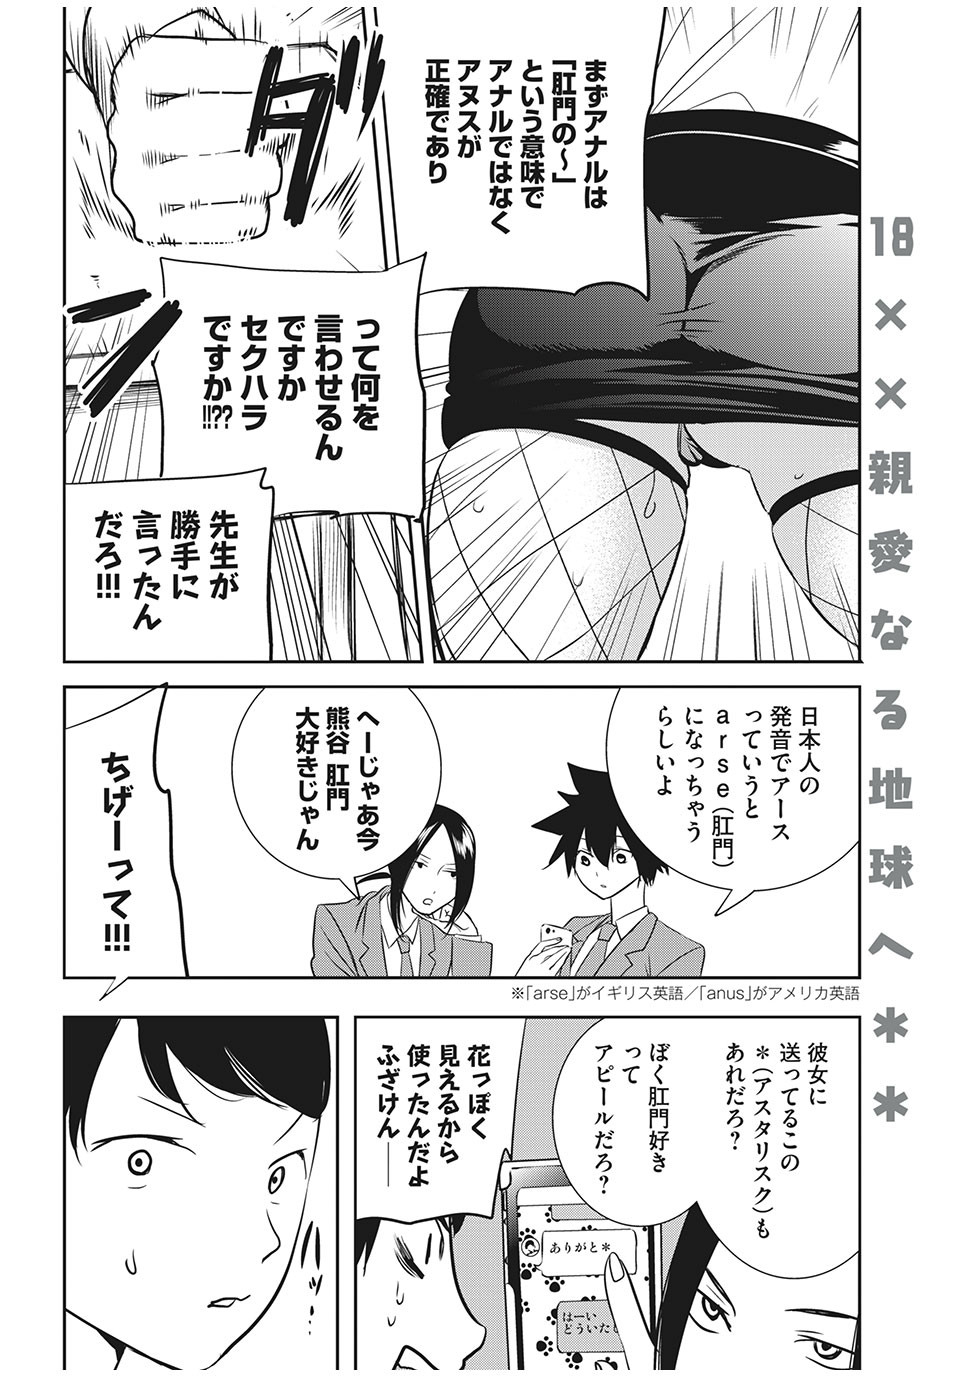 Eigo ×× Sensei - Chapter 18 - Page 4